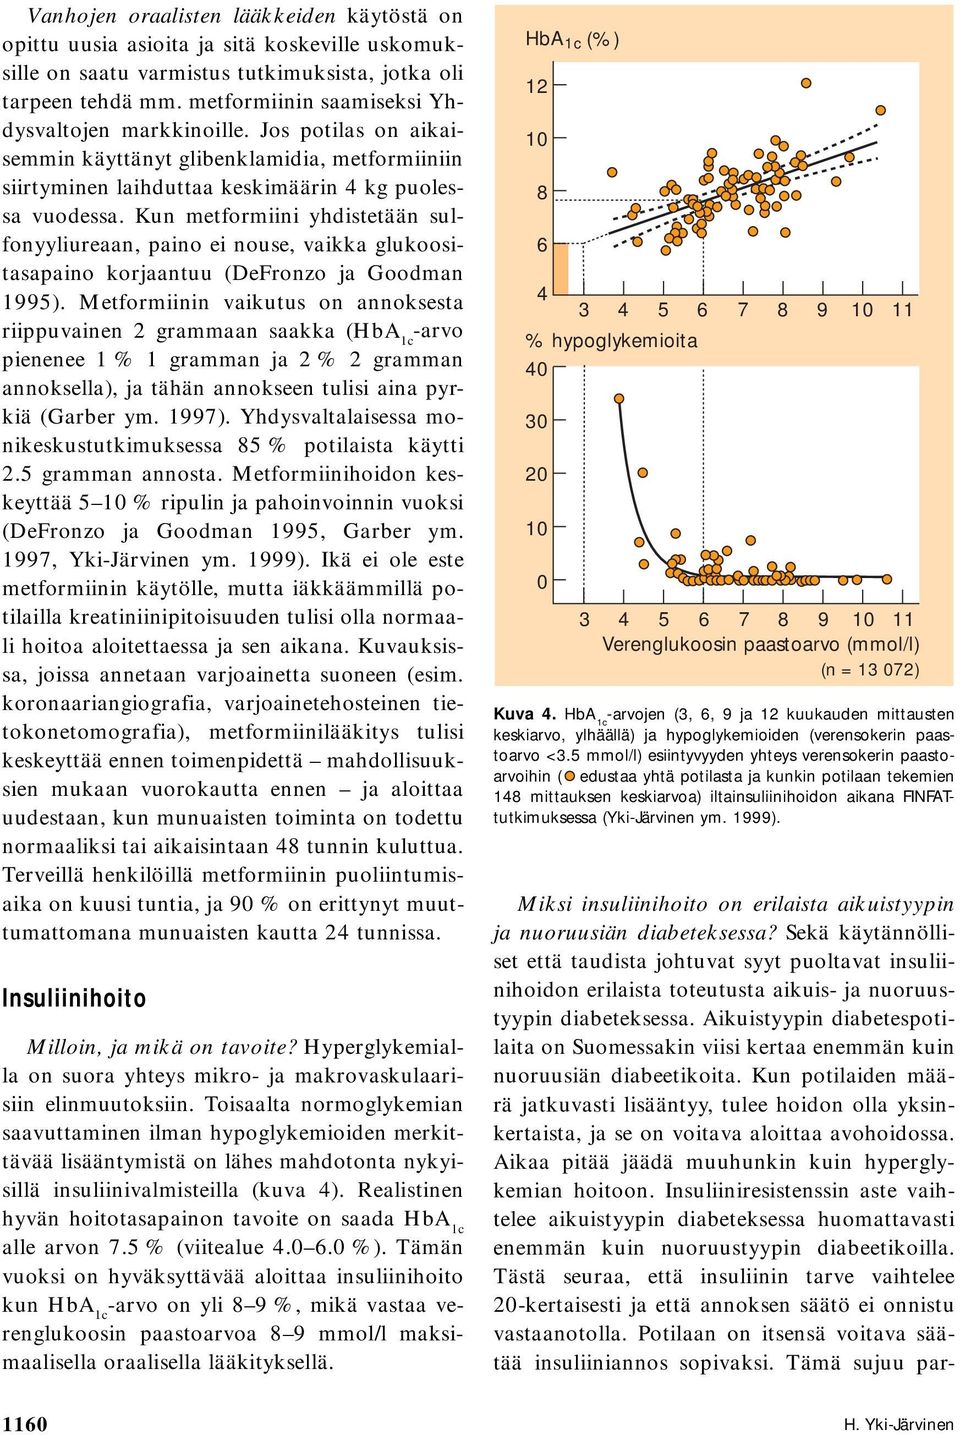 Kun metformiini yhdistetään sulfonyyliureaan, paino ei nouse, vaikka glukoositasapaino korjaantuu (DeFronzo ja Goodman 1995).